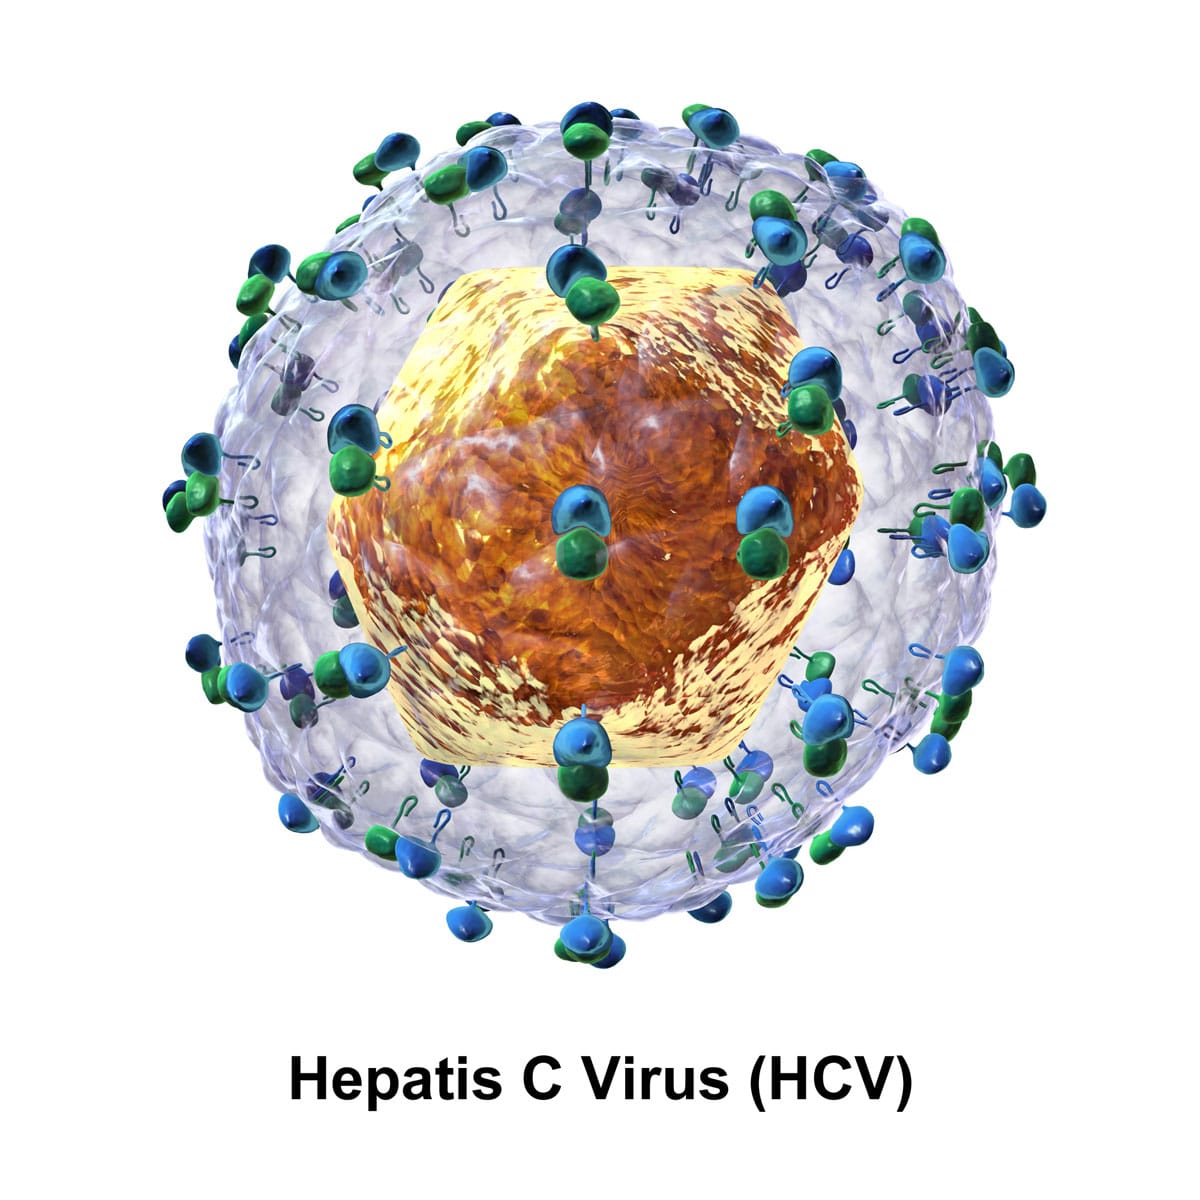 ¿Por qué no existe una vacuna contra la Hepatitis C?